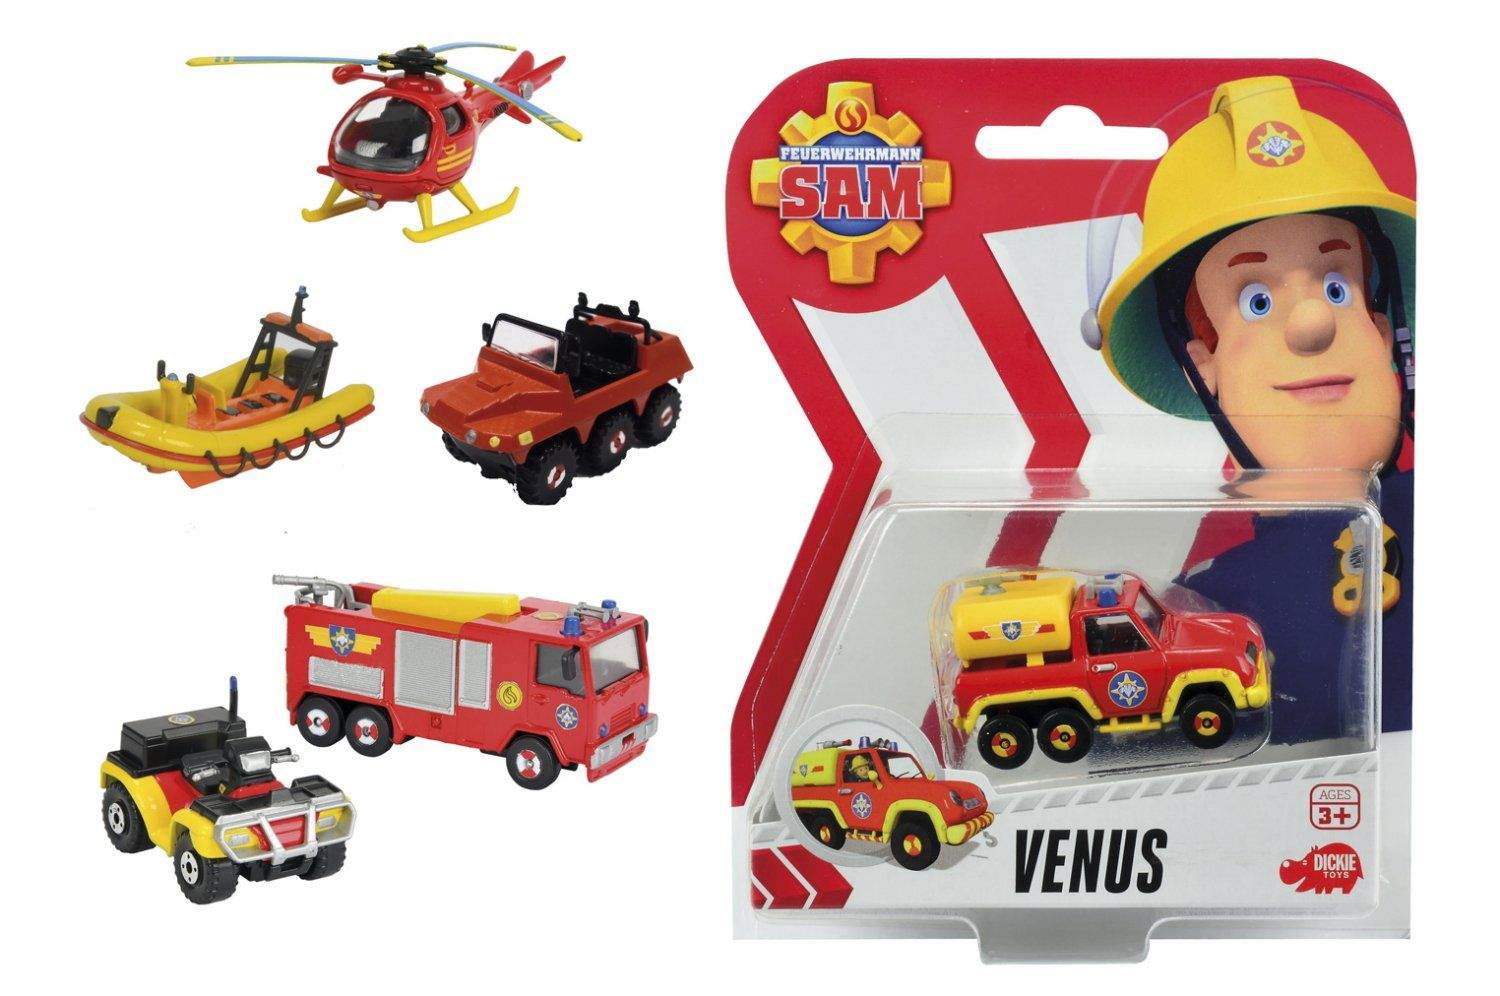 Купить игрушку пожарный. Пожарный автомобиль Dickie Toys пожарный Сэм служебный транспорт (203099625) 1:64. Машинка Dickie Toys пожарный Сэм (3093000) 1:64. Набор машин Dickie Toys пожарный Сэм (3099629) 11 см. Пожарный Сэм машинки.